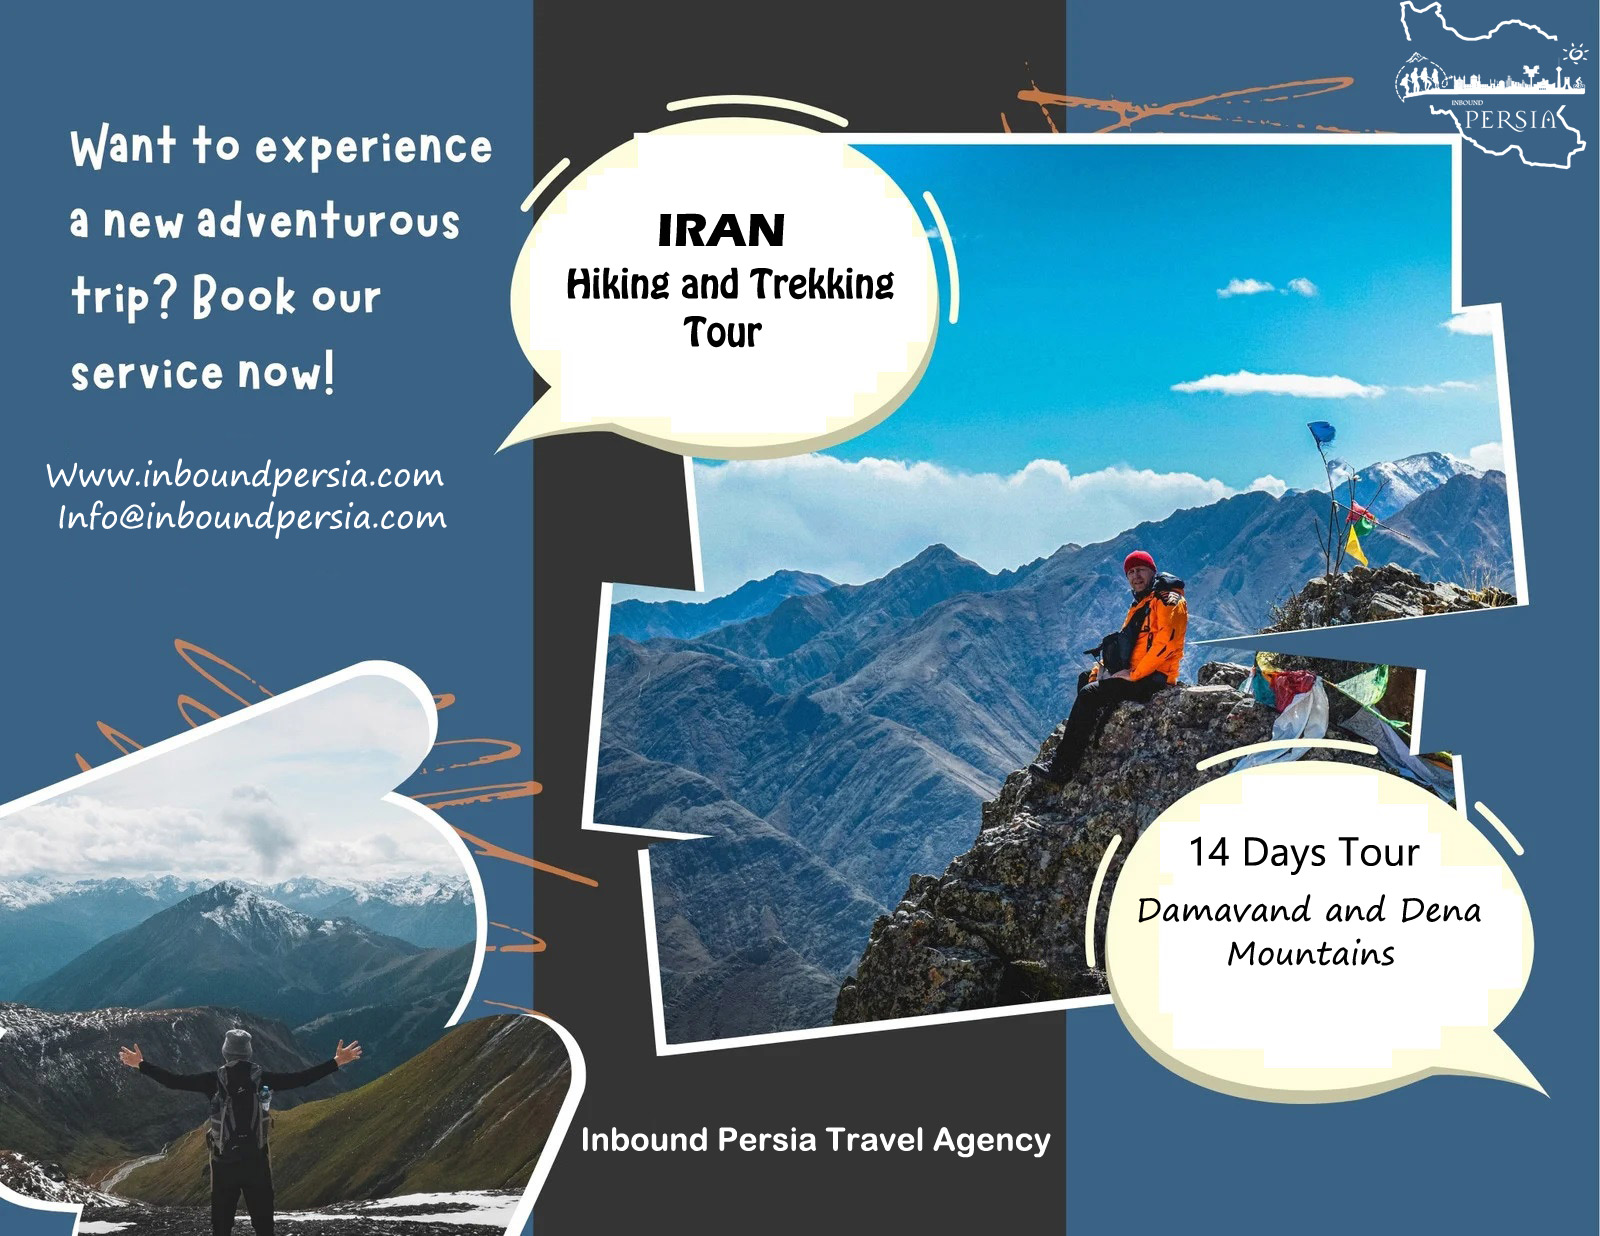 Iran Hiking and Trekking Tour